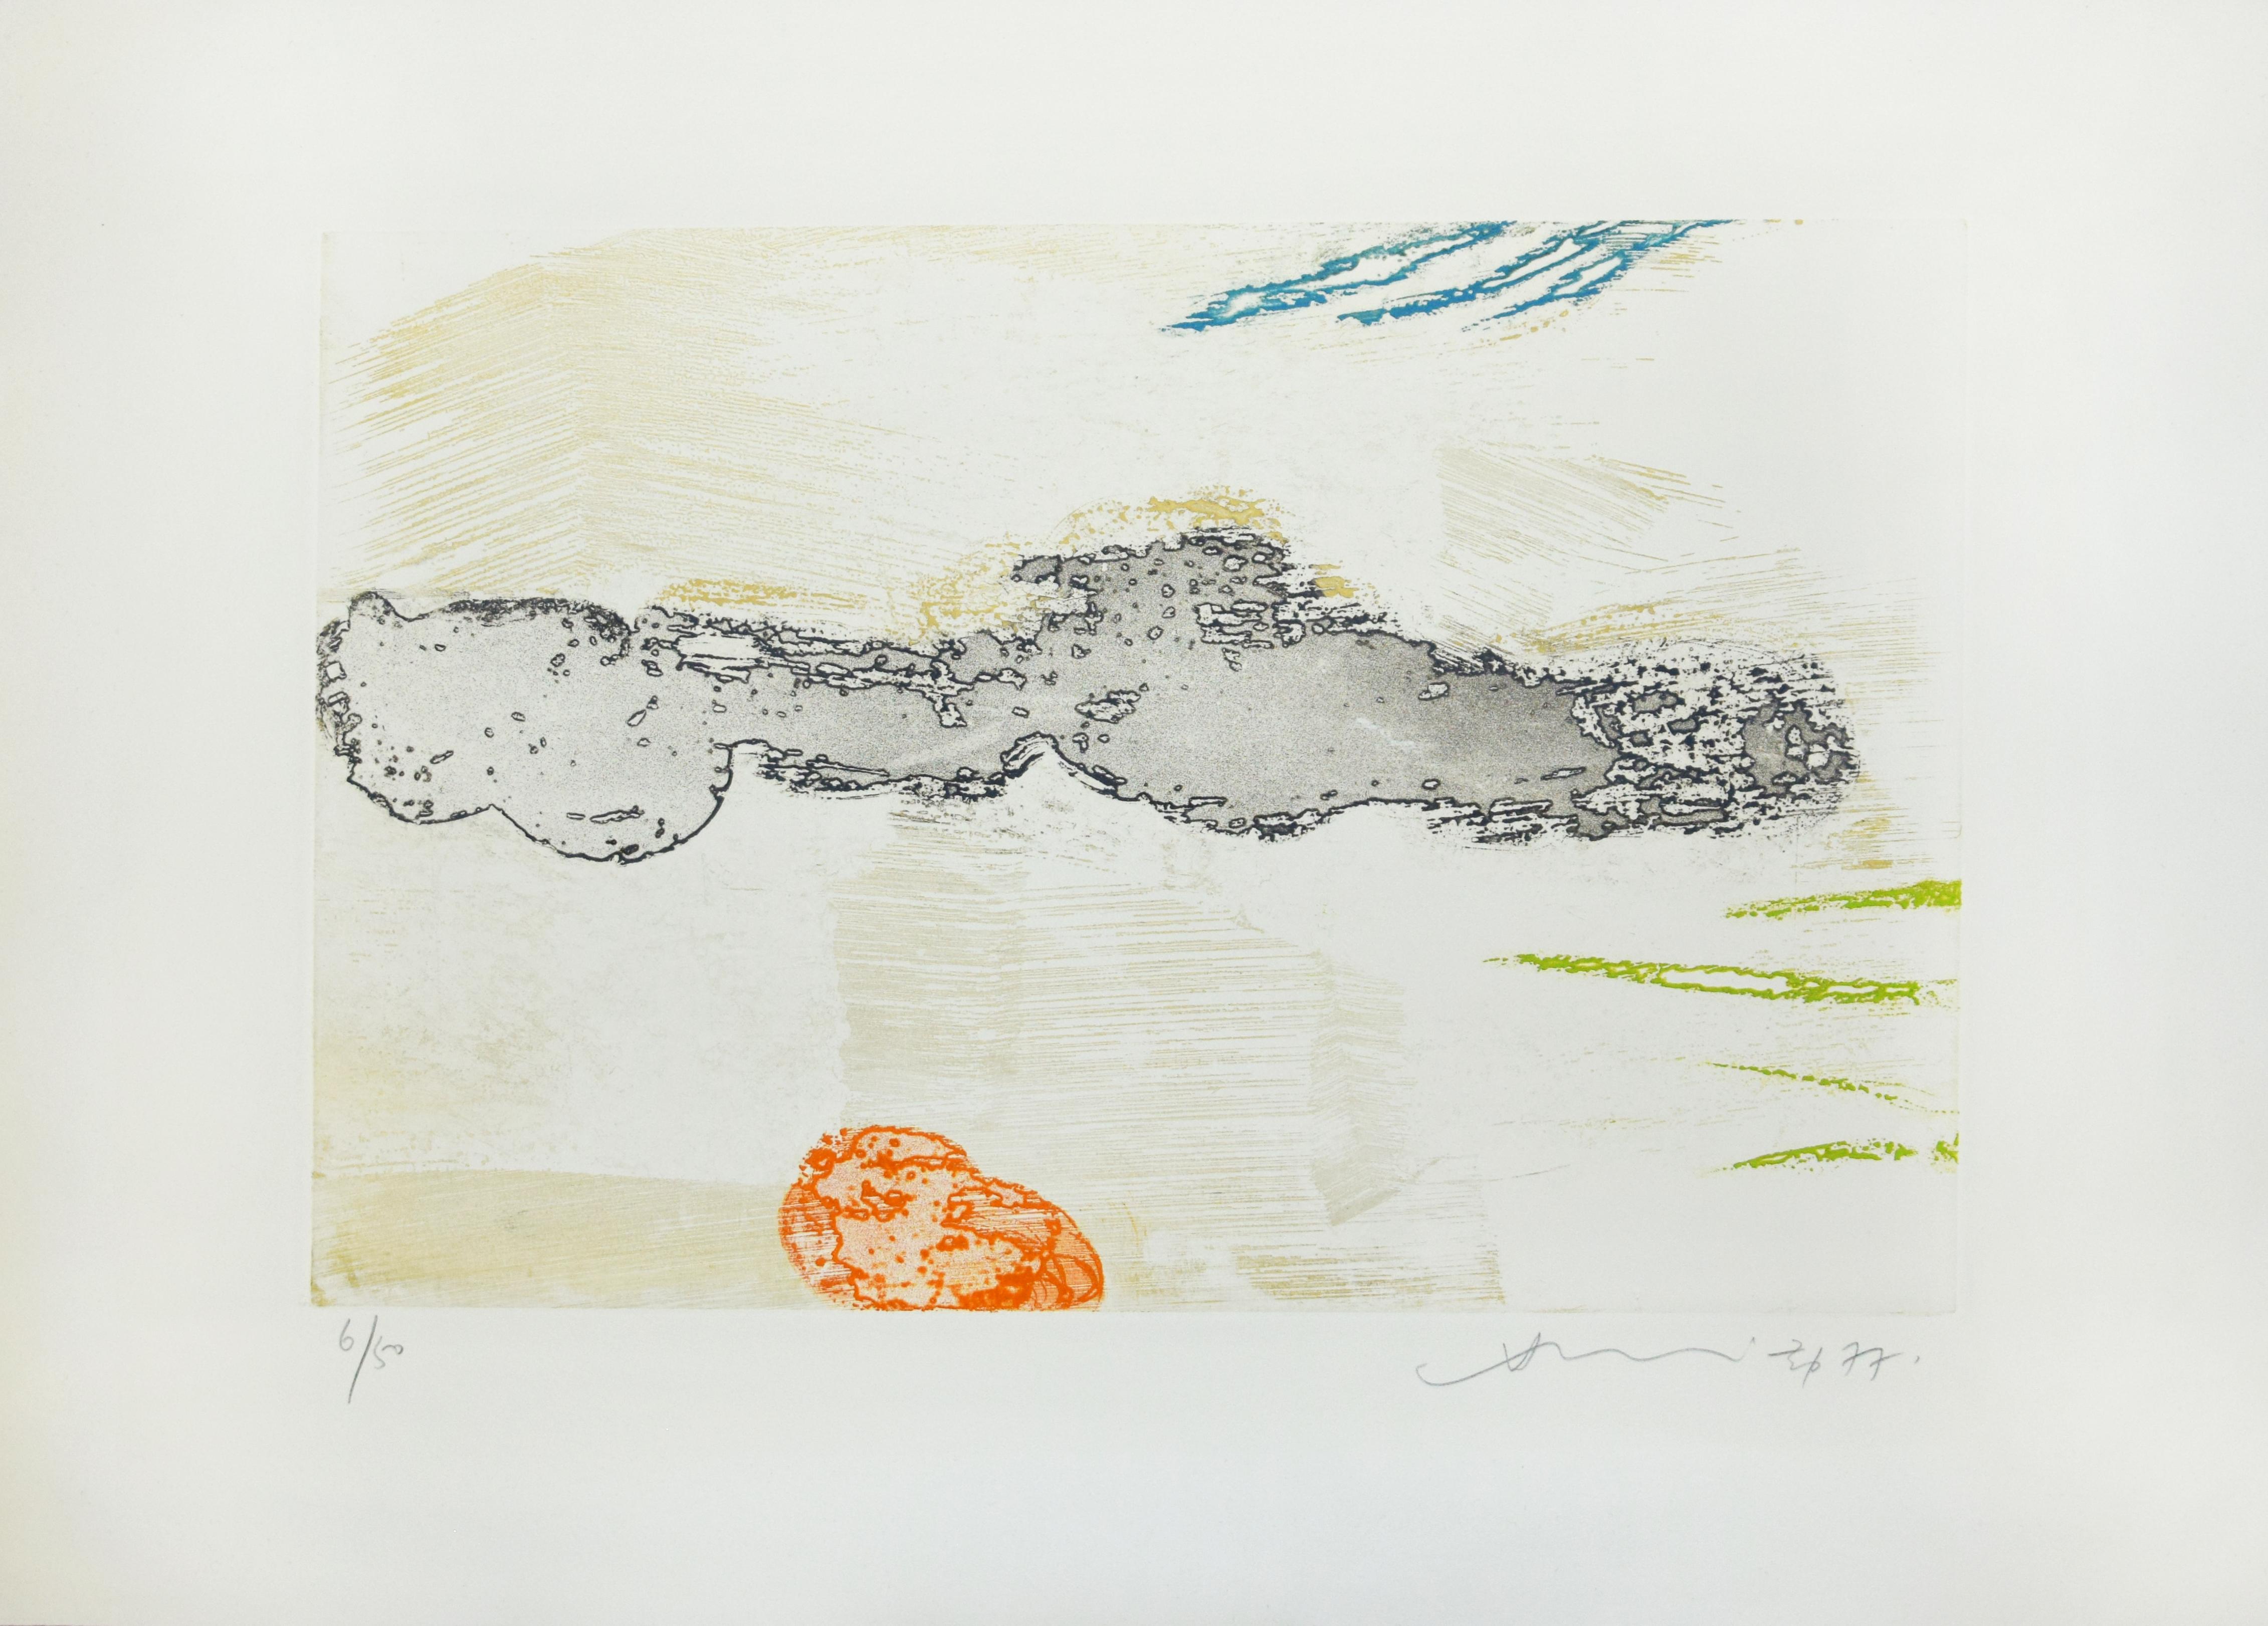 Sans titre est une belle gravure colorée réalisée par Hsiao Chin en 1977.

L'œuvre est signée et datée au crayon en bas à droite. Numéroté en bas à gauche. Edition 6/50.

Édité par La Nuova Foglio, Macerata, Italie.

Hsiao Chin (Shanghai, 1935) a